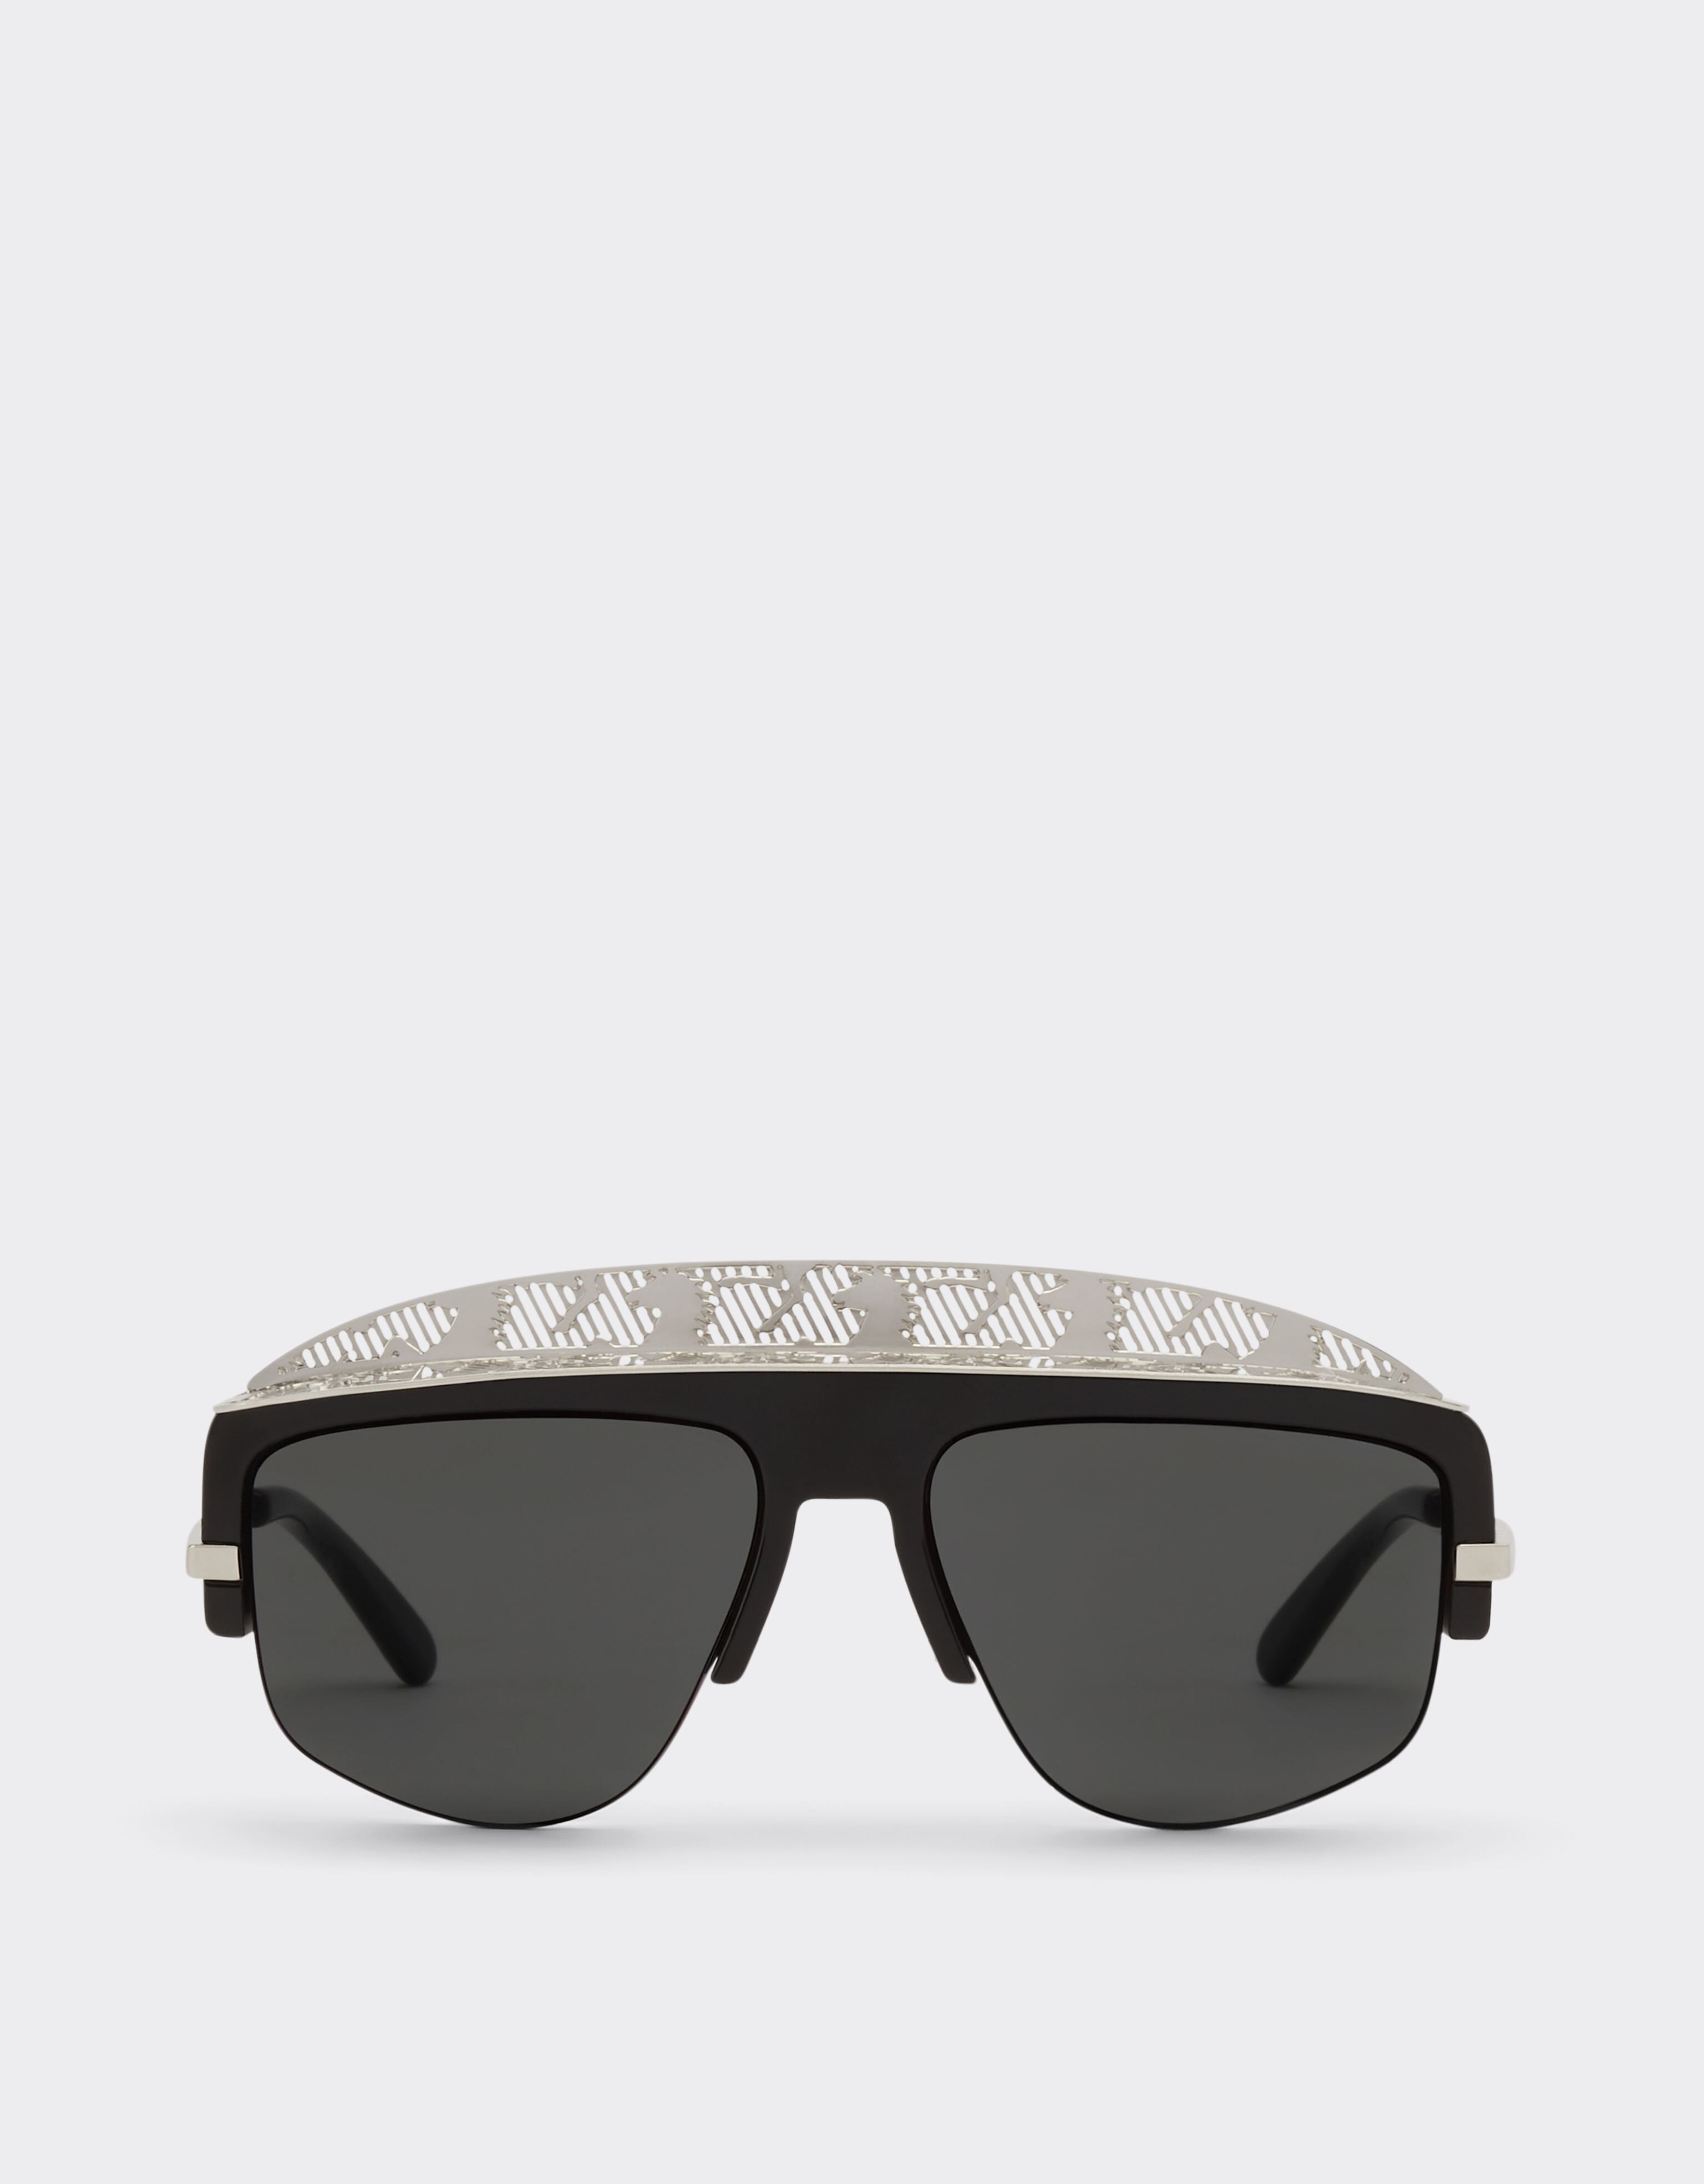 Ferrari Lunettes de soleil masque Ferrari avec verre miroir gris argent Noir F0829f